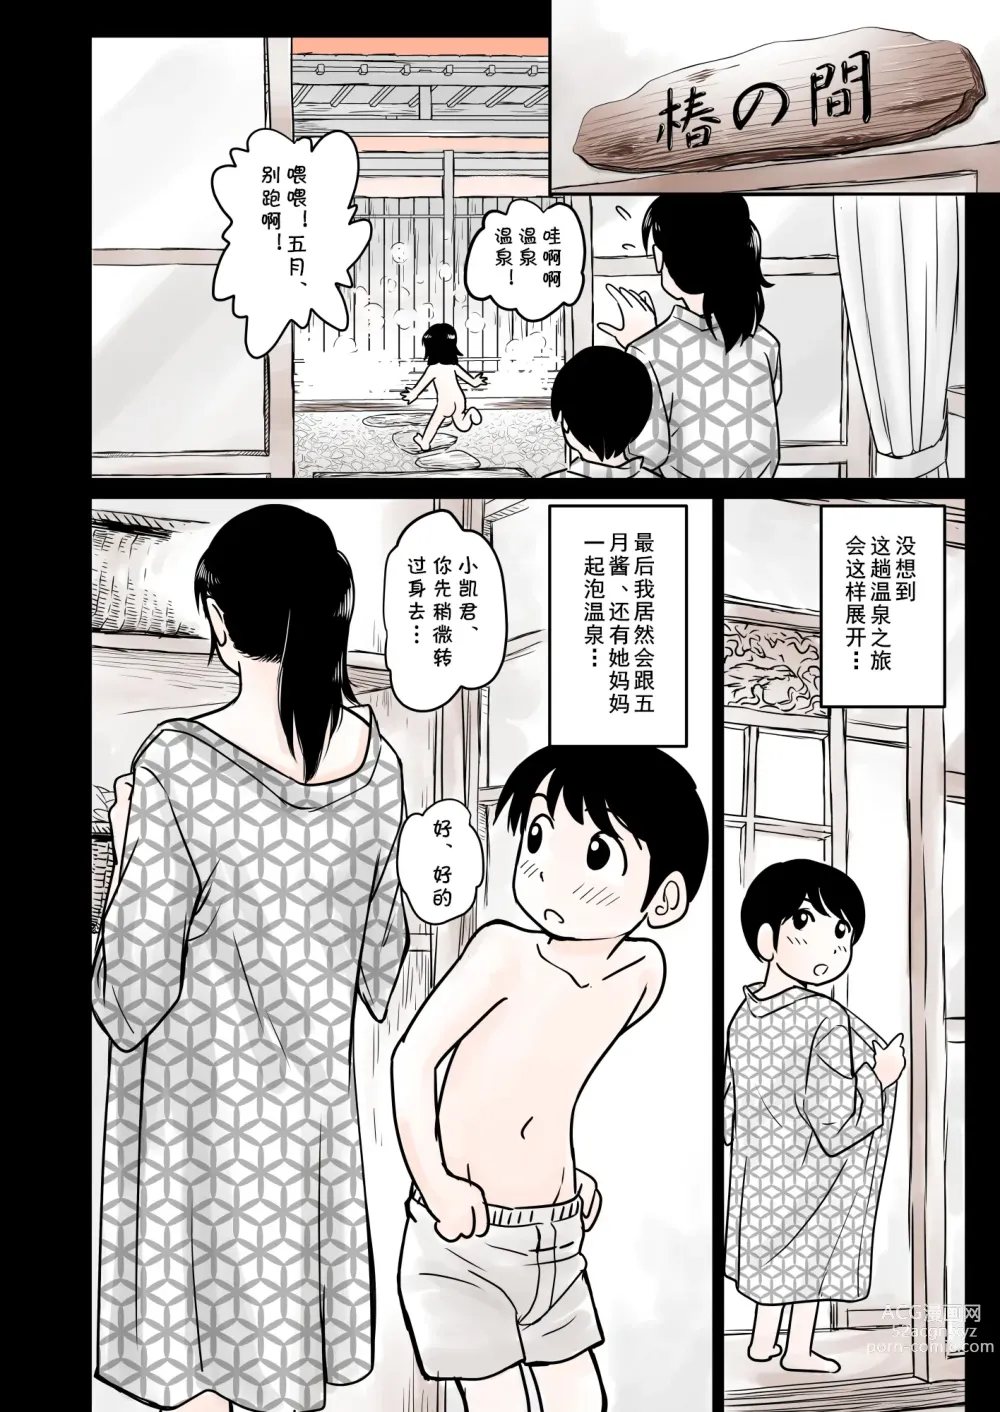 Page 3 of doujinshi Ia~n Ryoko